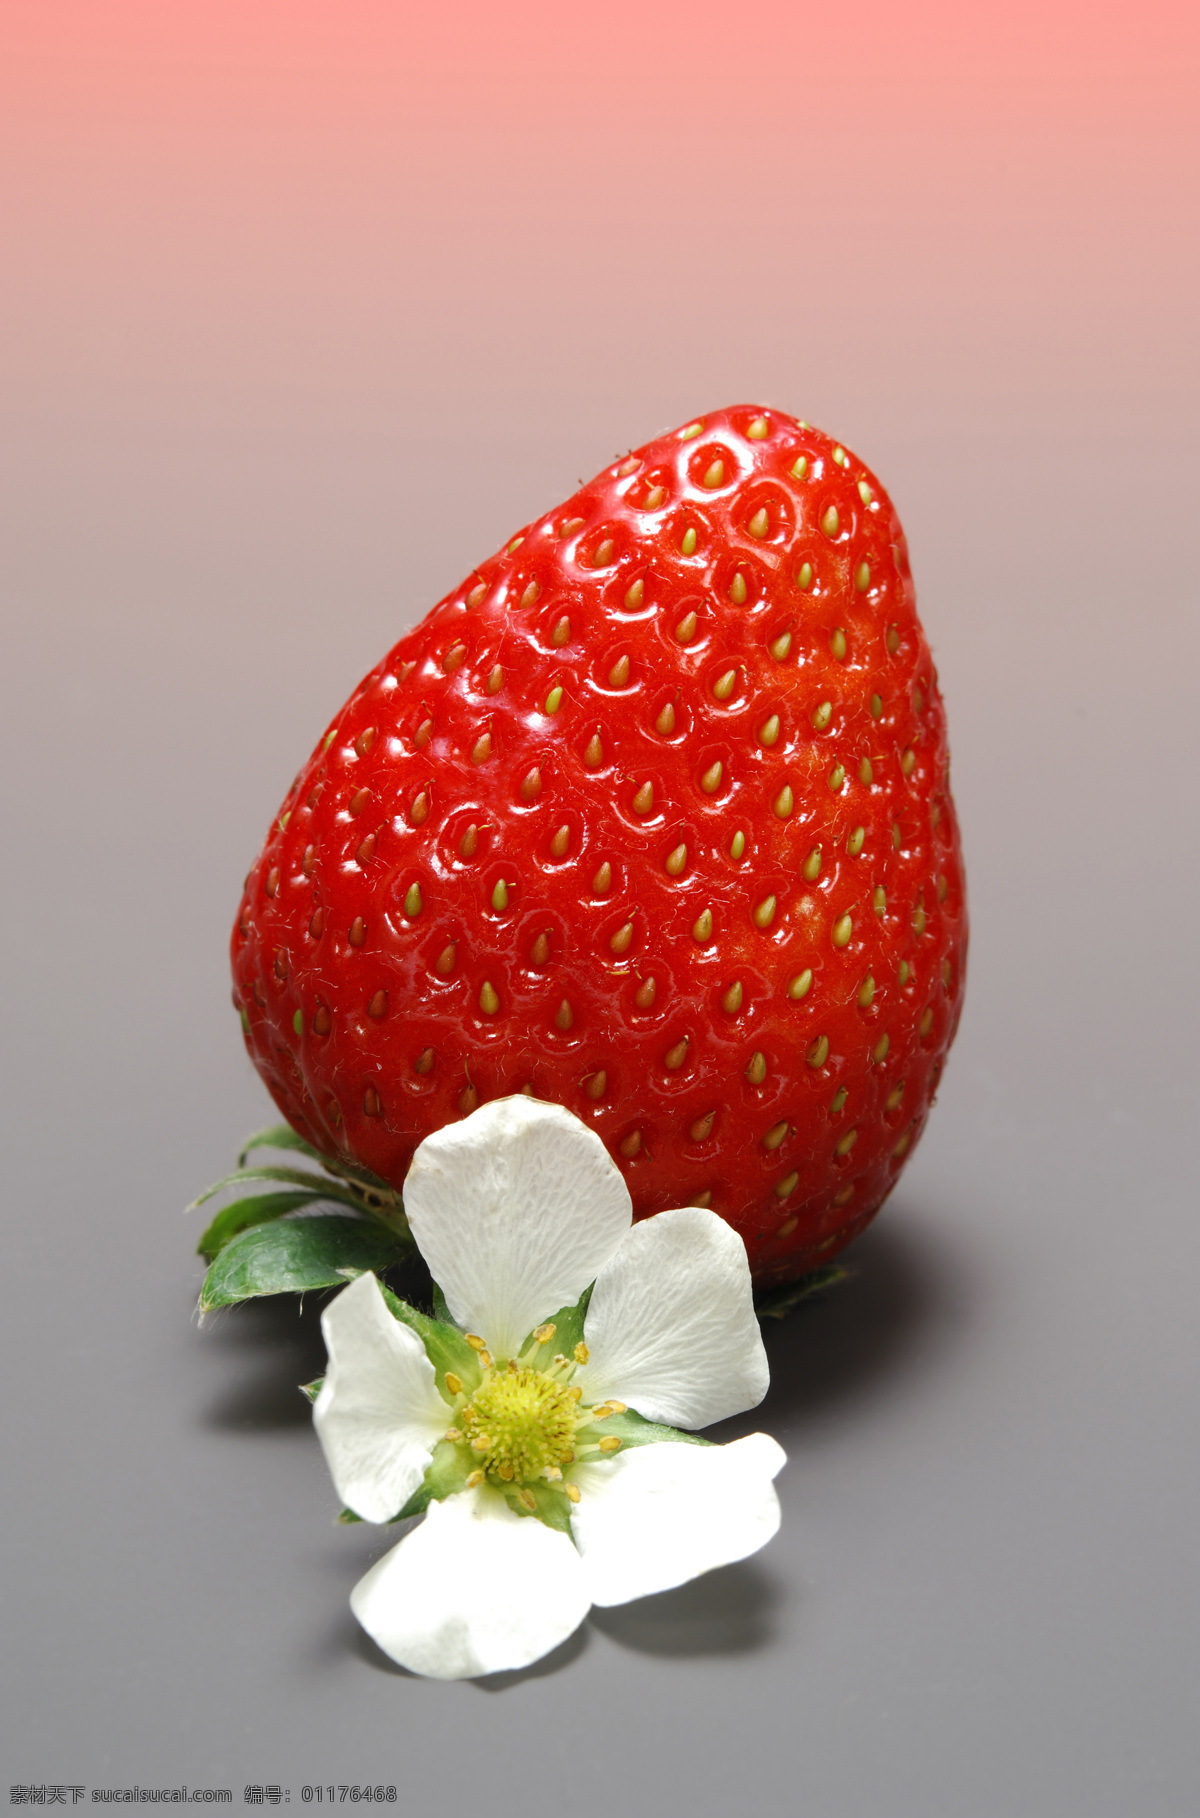 草莓 新鲜草莓 红色草莓 草莓花 健康果实 绿色水果 可口的草莓 有机食品 有机水果 新鲜水果 草莓高清图片 摄影素材 水果 水果蔬菜 美食文化 餐饮美食 灰色